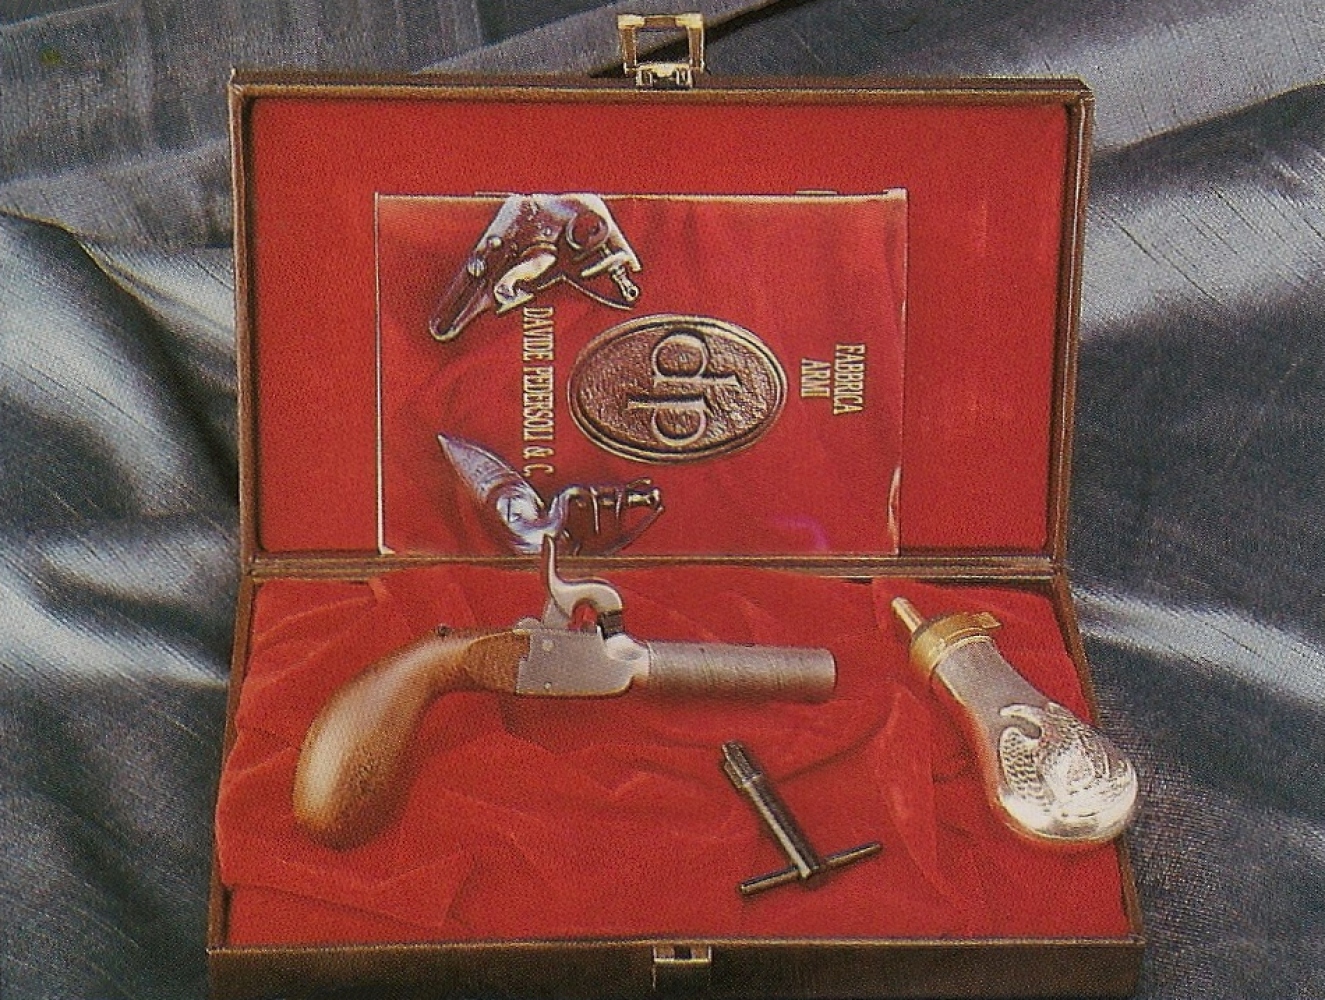 Cette réplique Pedersoli est présentée dans un coffret accompagnée d’une petite poire à poudre et d’une clé spéciale à double usage, permettant à la fois de dévisser le canon pour le chargement et la cheminée pour le nettoyage.